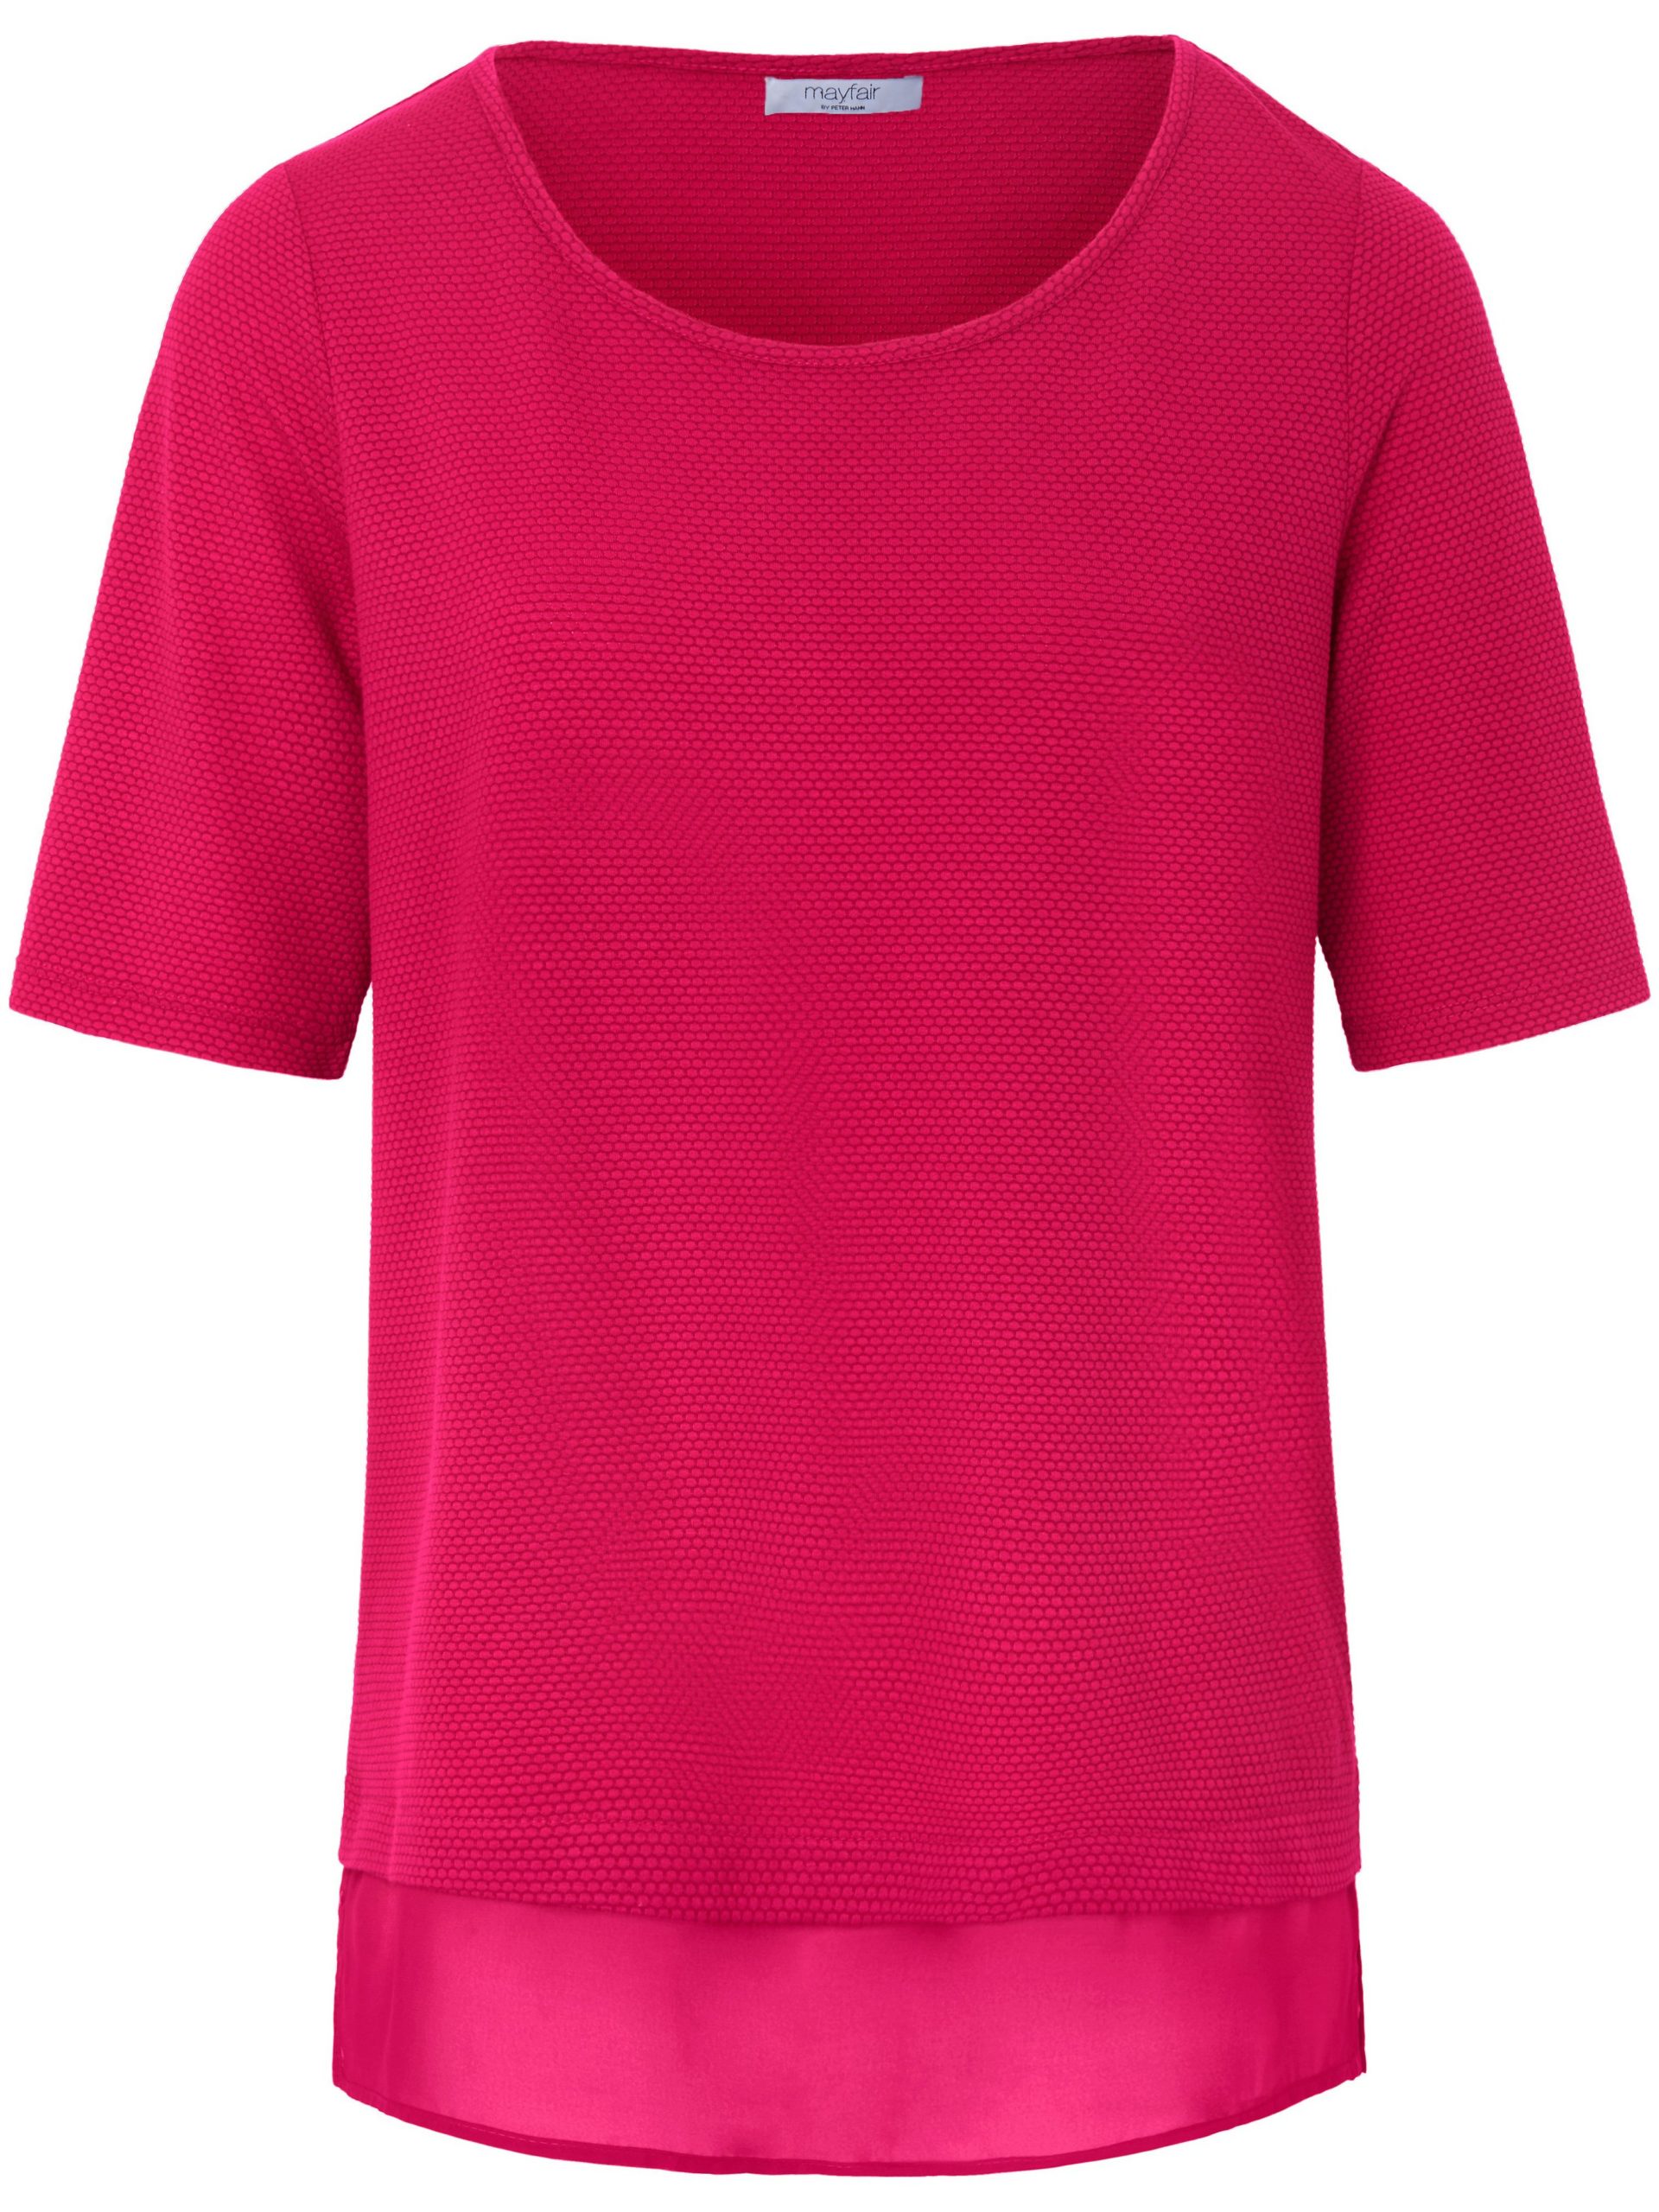 Shirt met ronde hals en korte mouwen Van mayfair by Peter Hahn roze Kopen